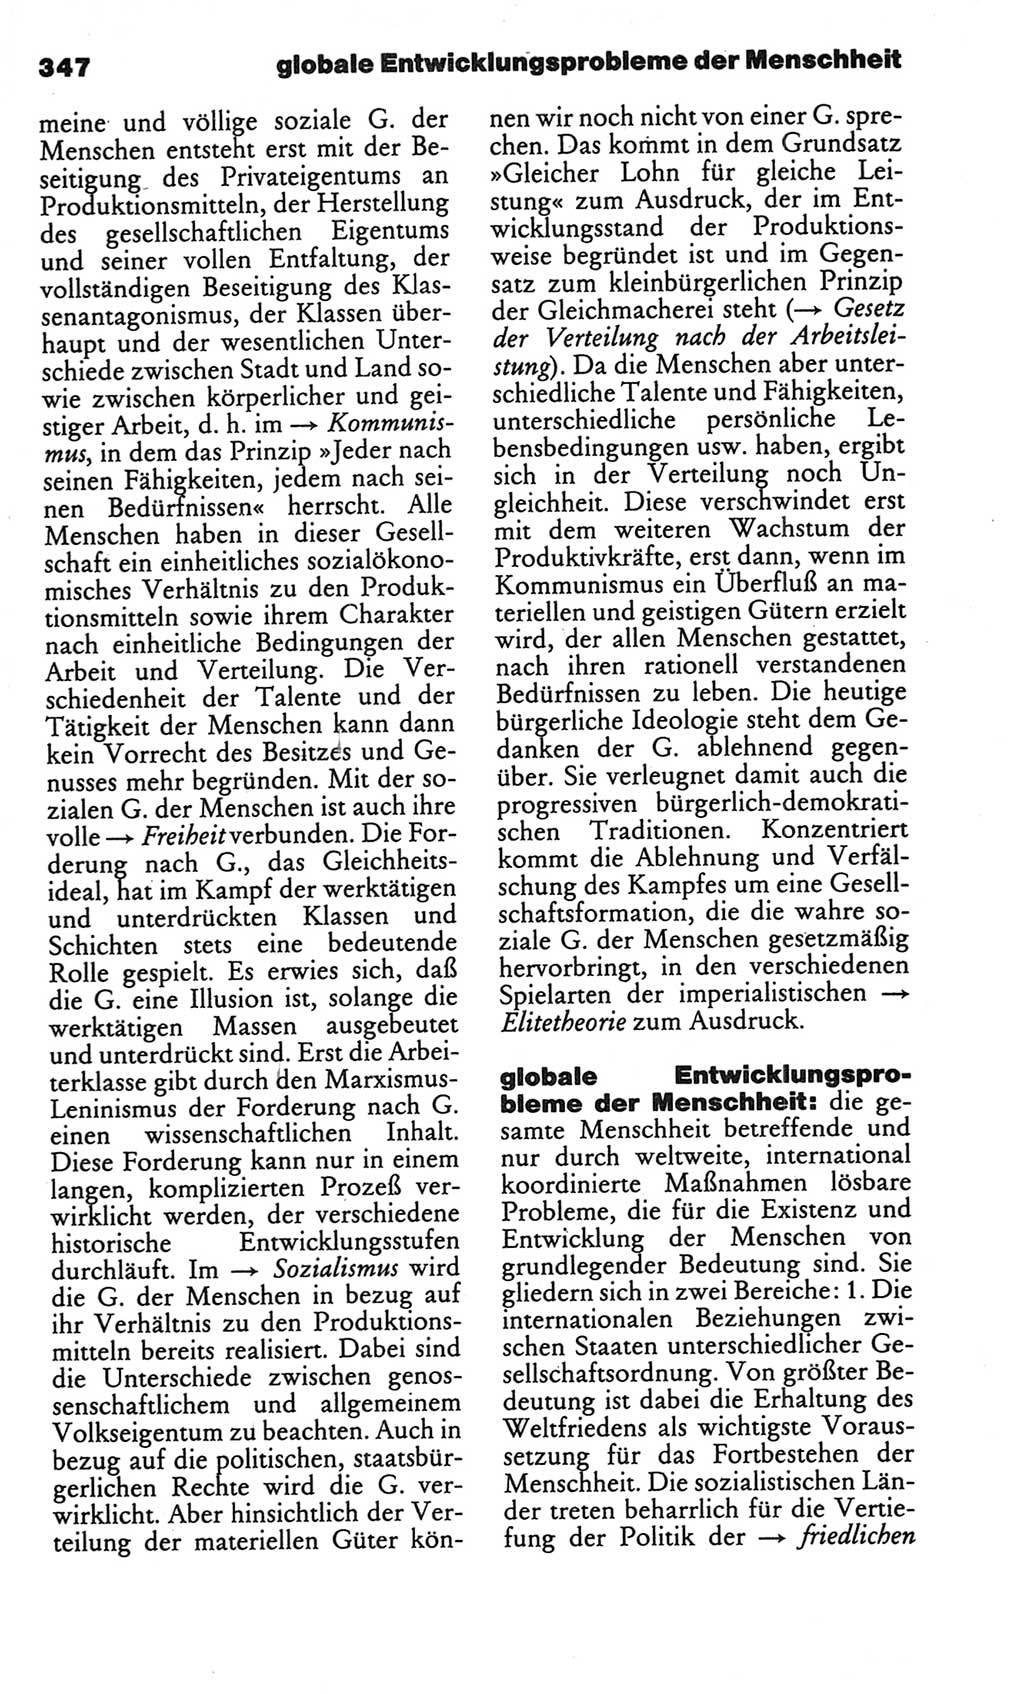 Kleines politisches Wörterbuch [Deutsche Demokratische Republik (DDR)] 1986, Seite 347 (Kl. pol. Wb. DDR 1986, S. 347)